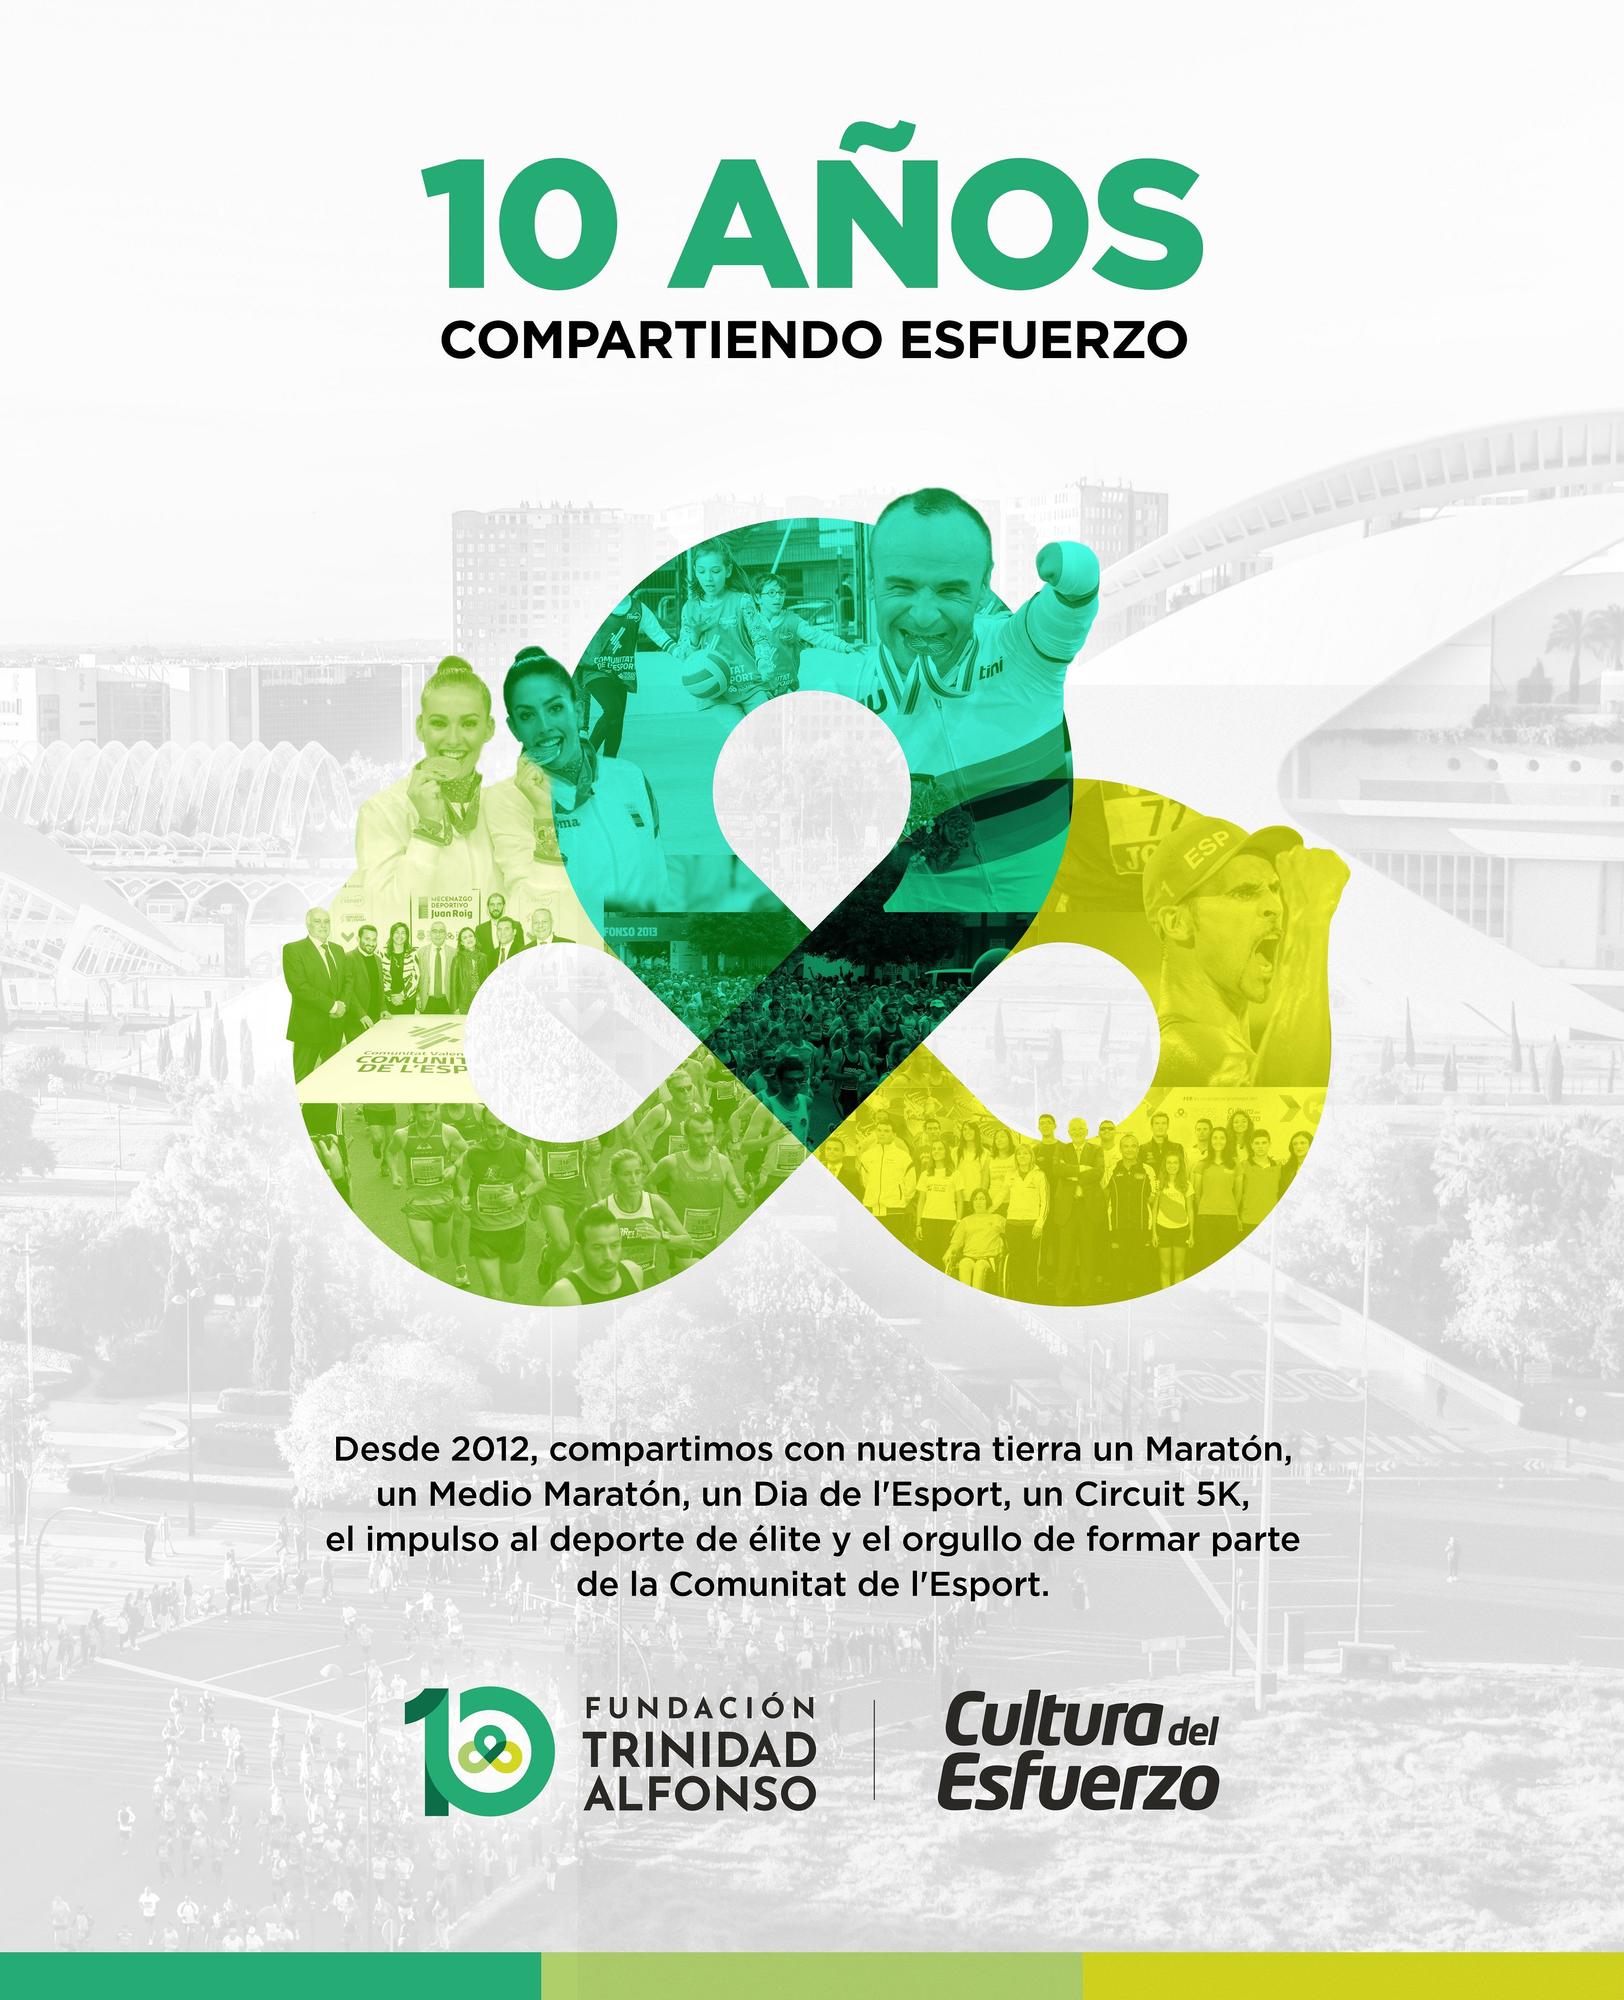 Cartel del décimo aniversario de la Fundación Trinidad Alfonso